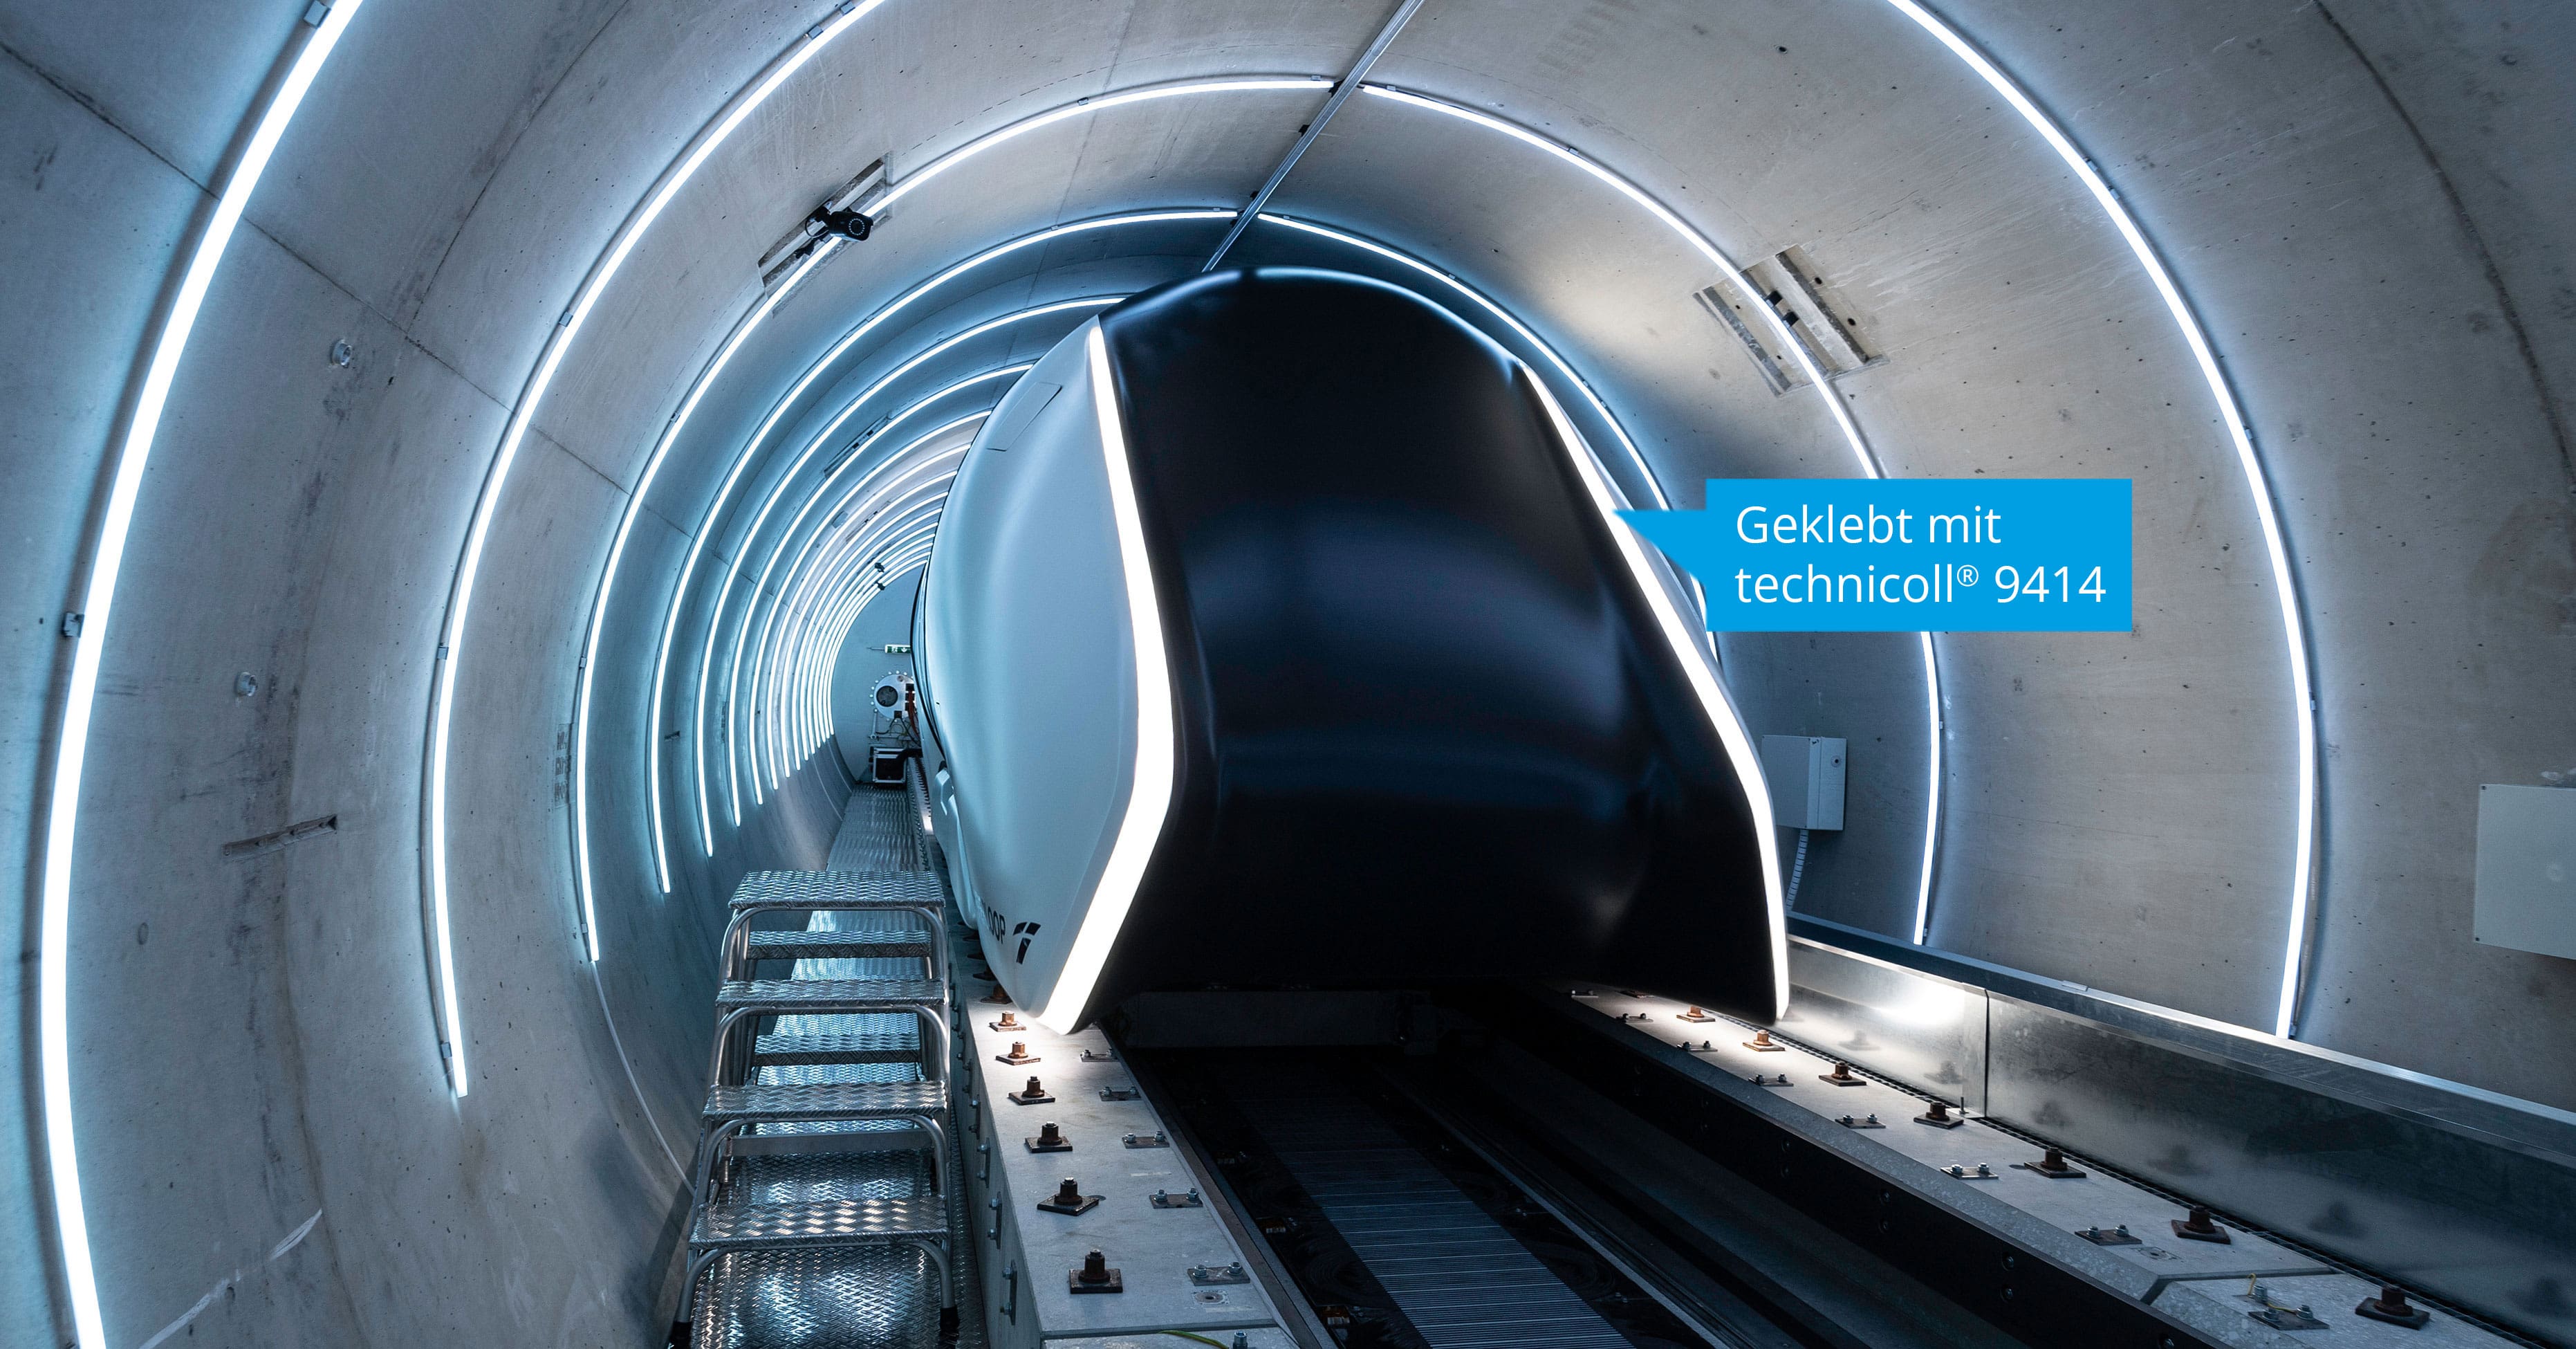 Ein Klebstoff bringt Licht in den Hyperloop